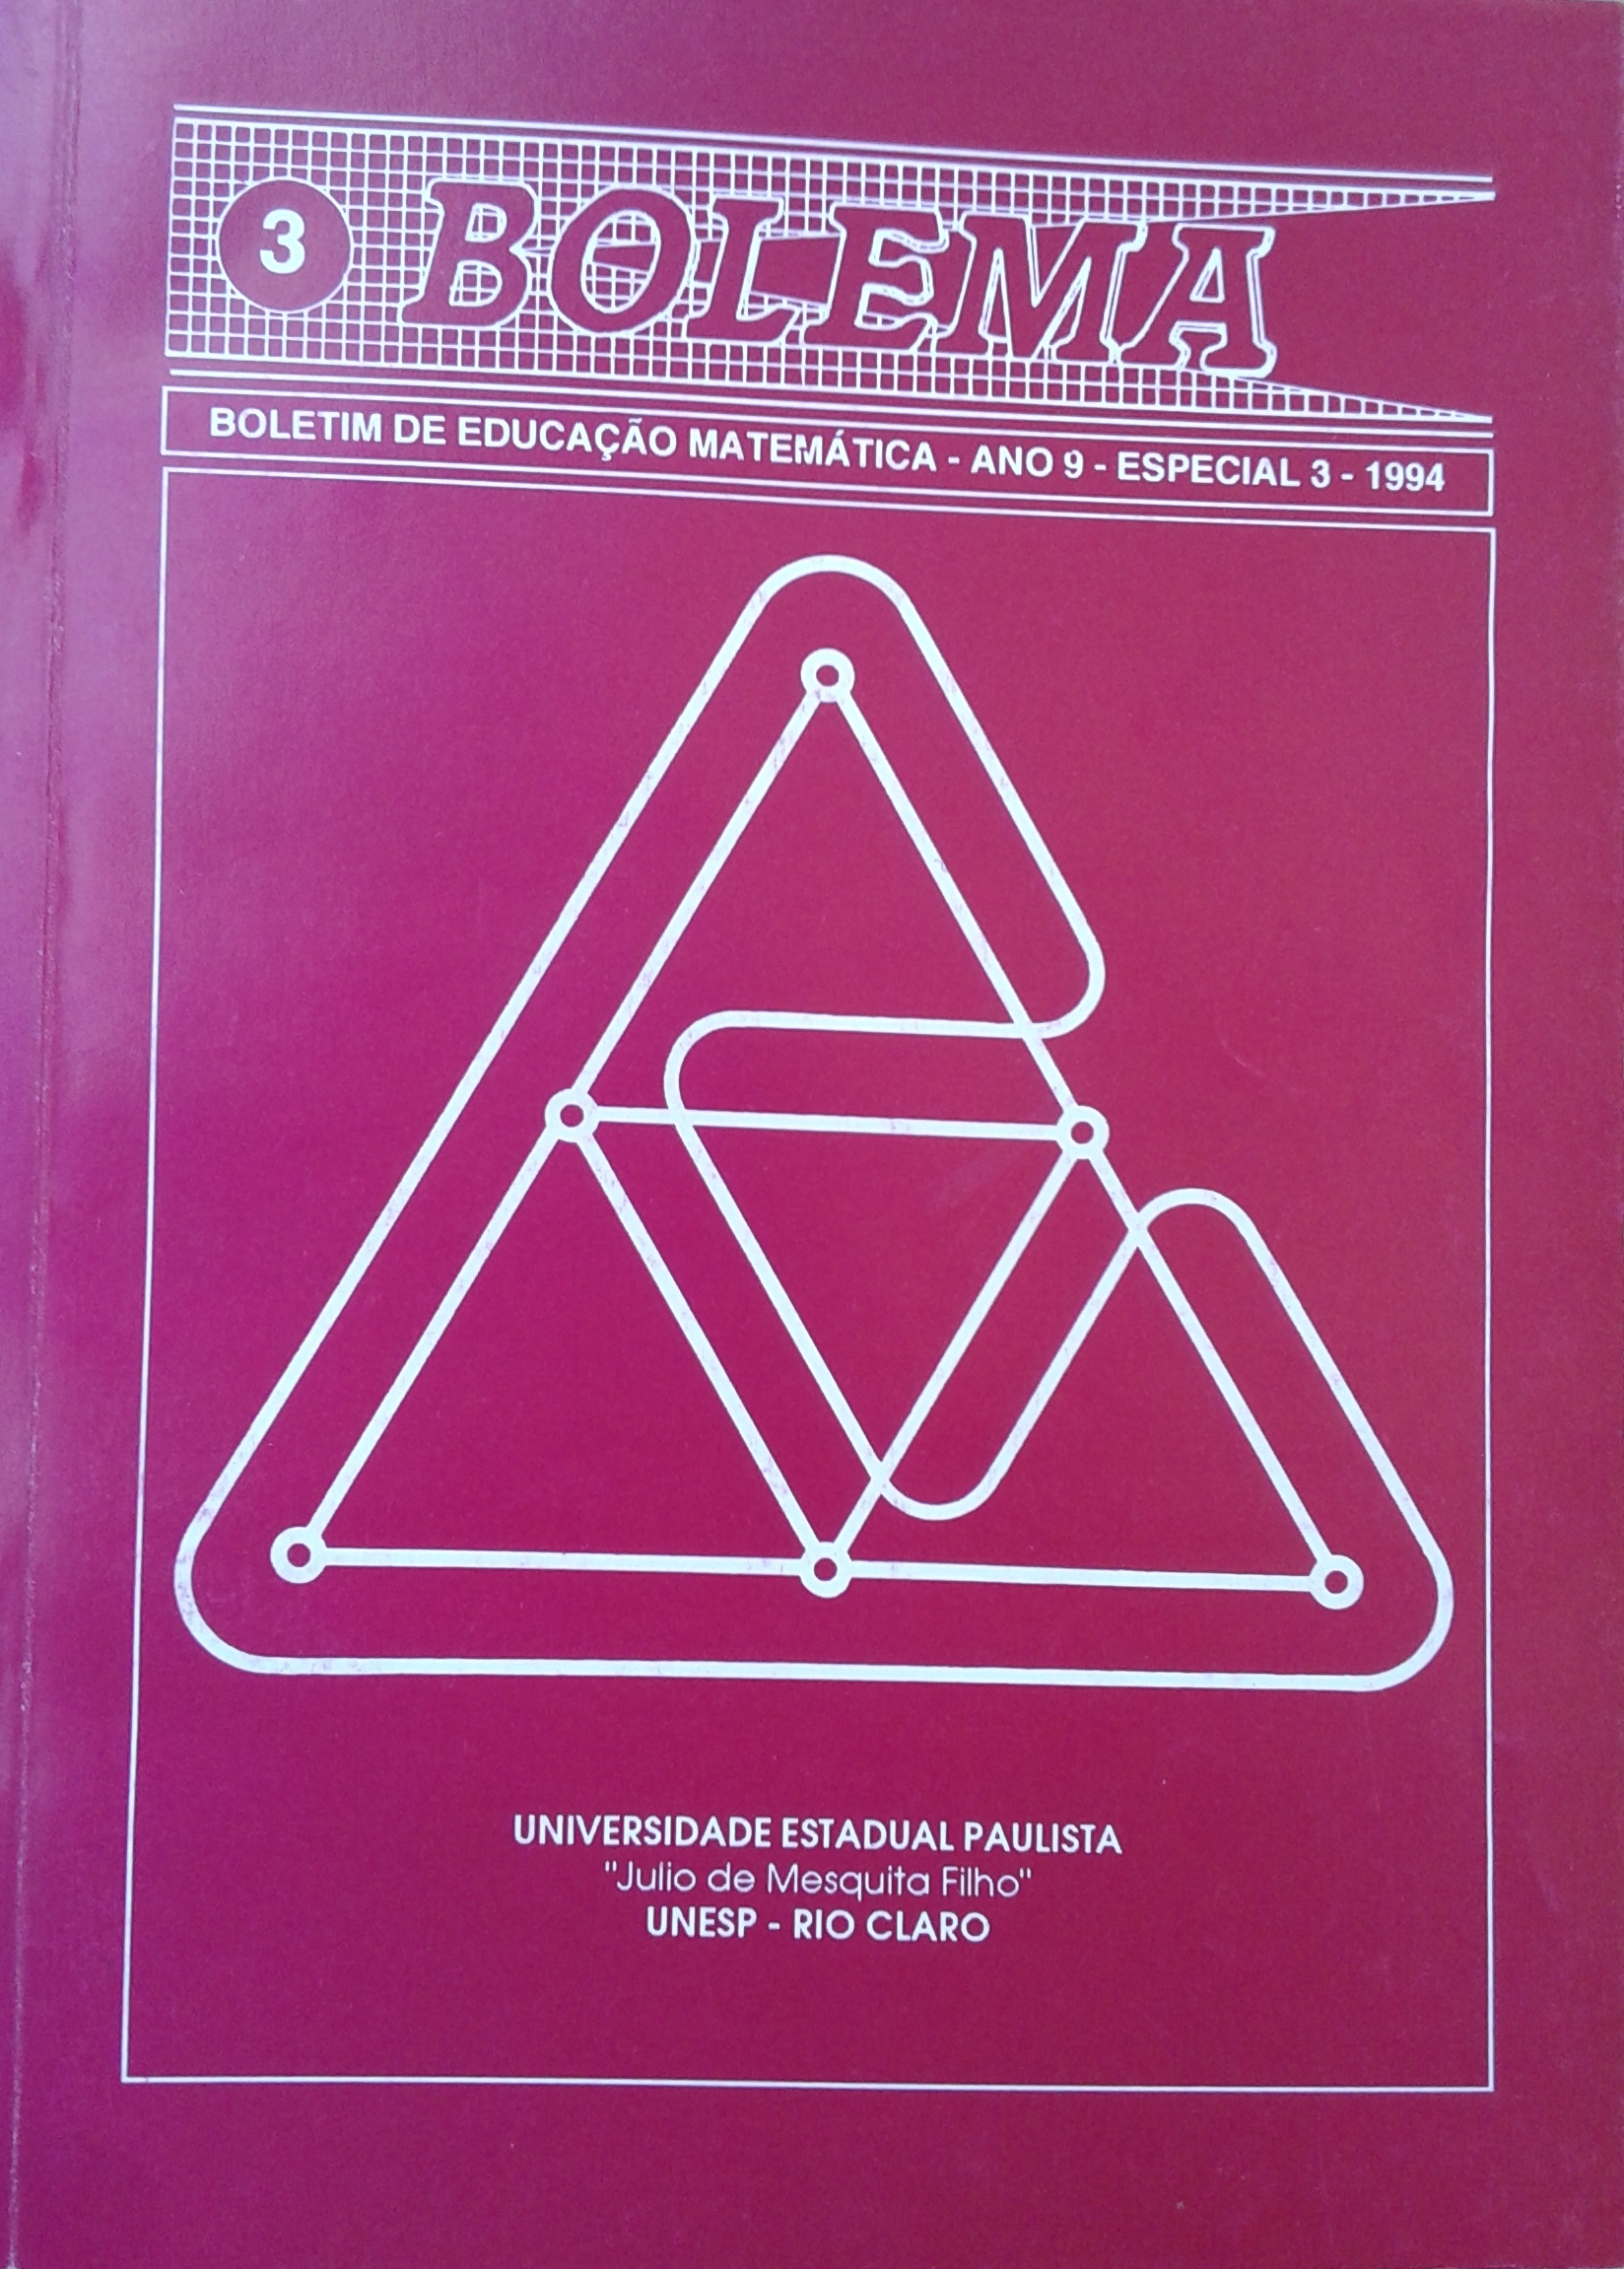 					Visualizar Edição Especial 3 (1994)
				